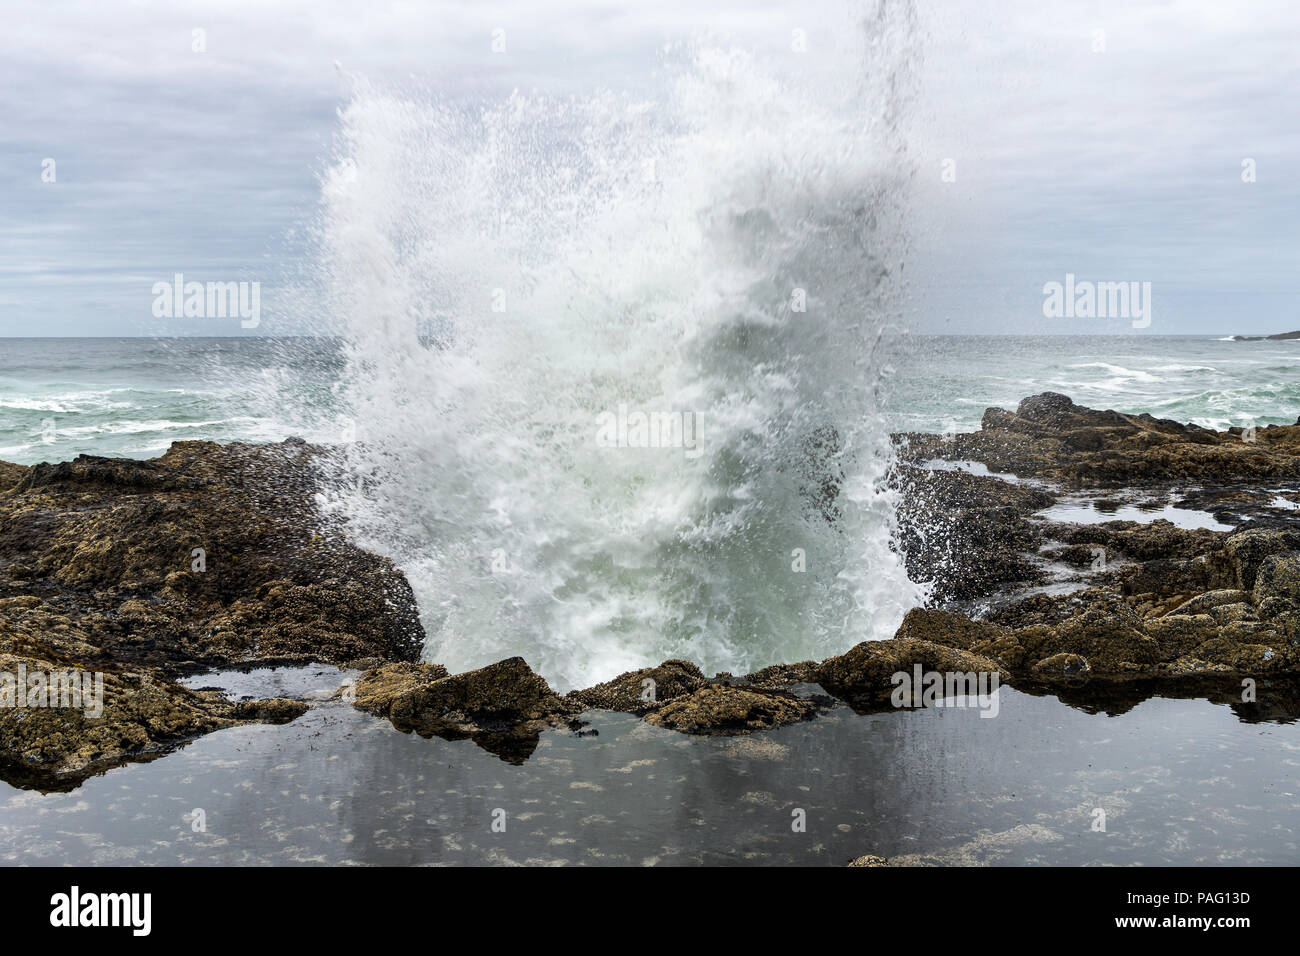 Une vague s'écraser sur Thor est bien à Cape Perpetua promontoire rocheux, célèbre monument de l'état sauvage Côte de l'Oregon, USA. Banque D'Images